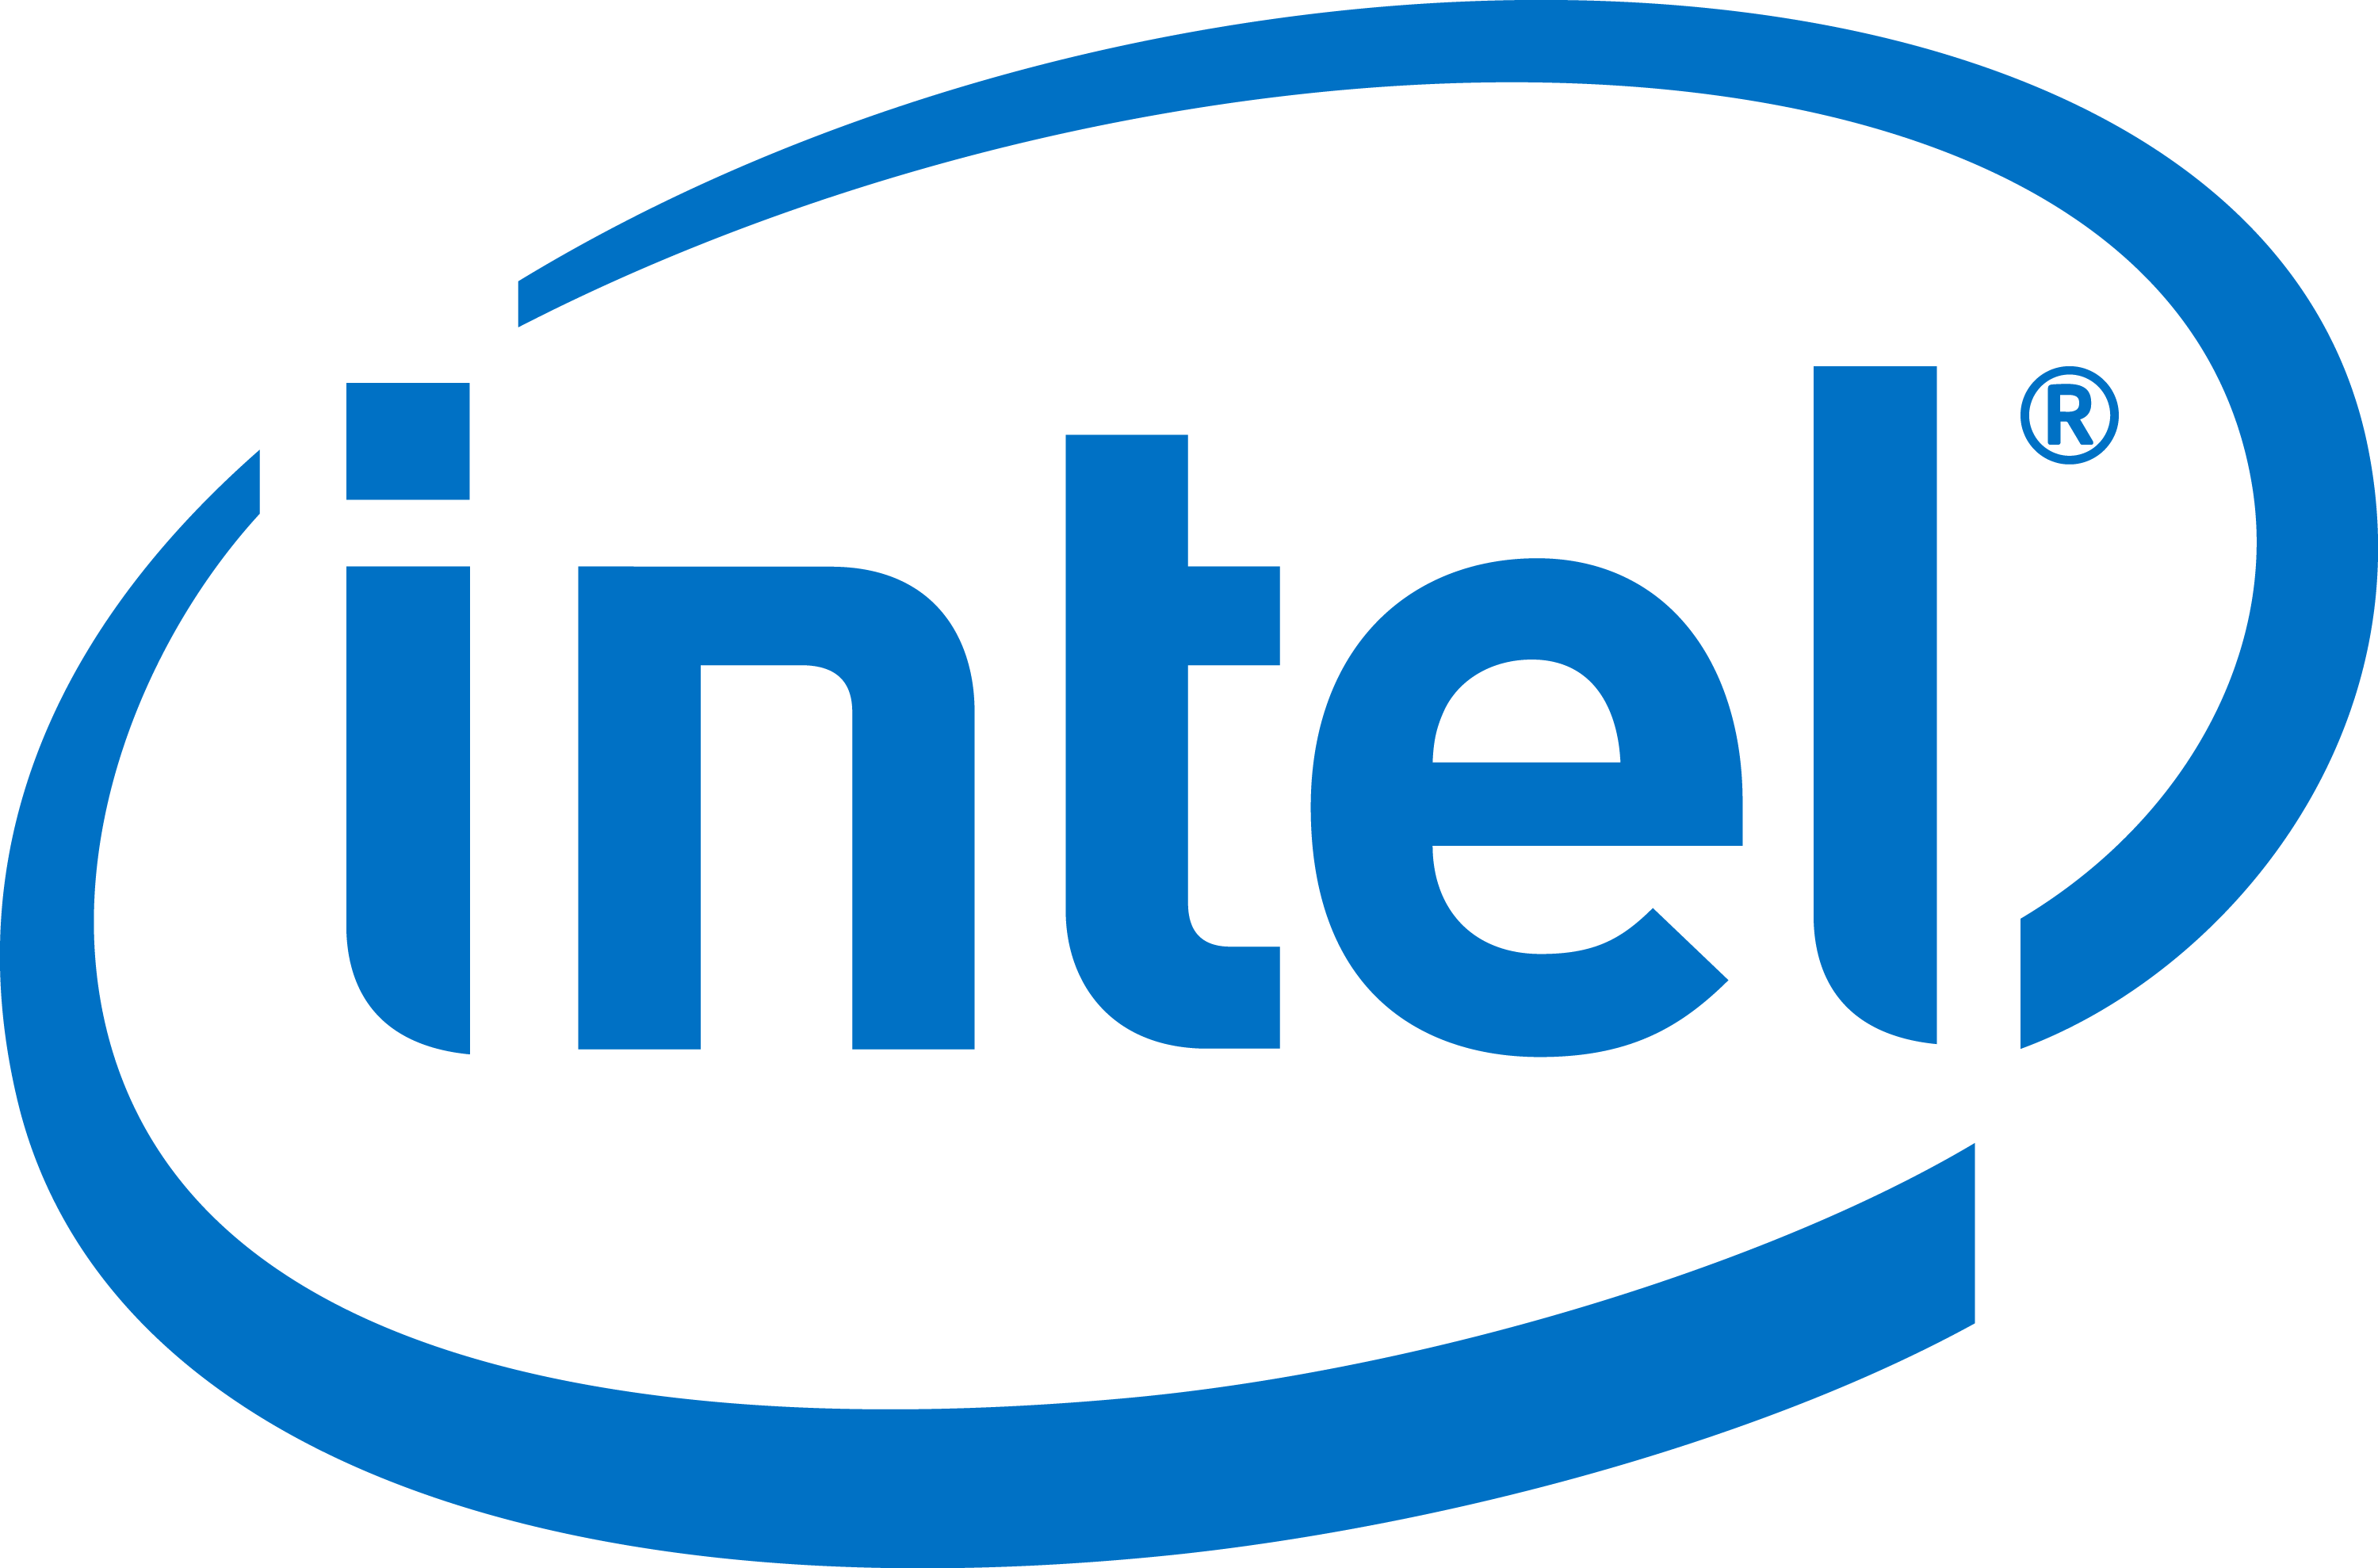 Gold - Intel Xeon 2.3 Ghz Processor (3000x1978)